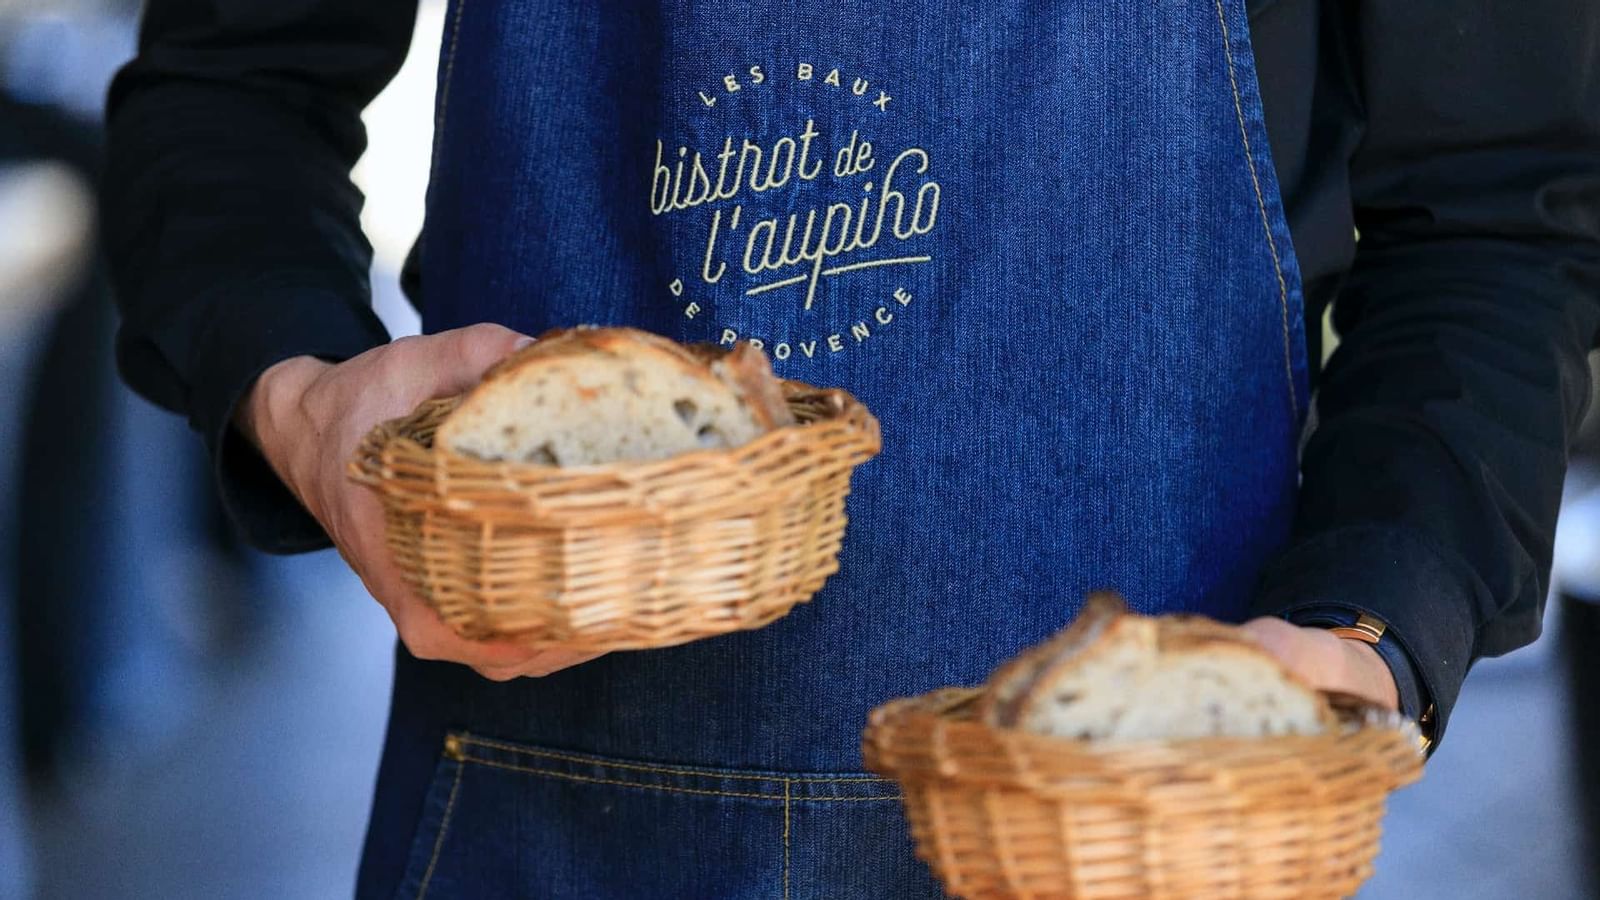 A waiter holding 2 bread baskets, l'Aupiho, Domaine de Manville